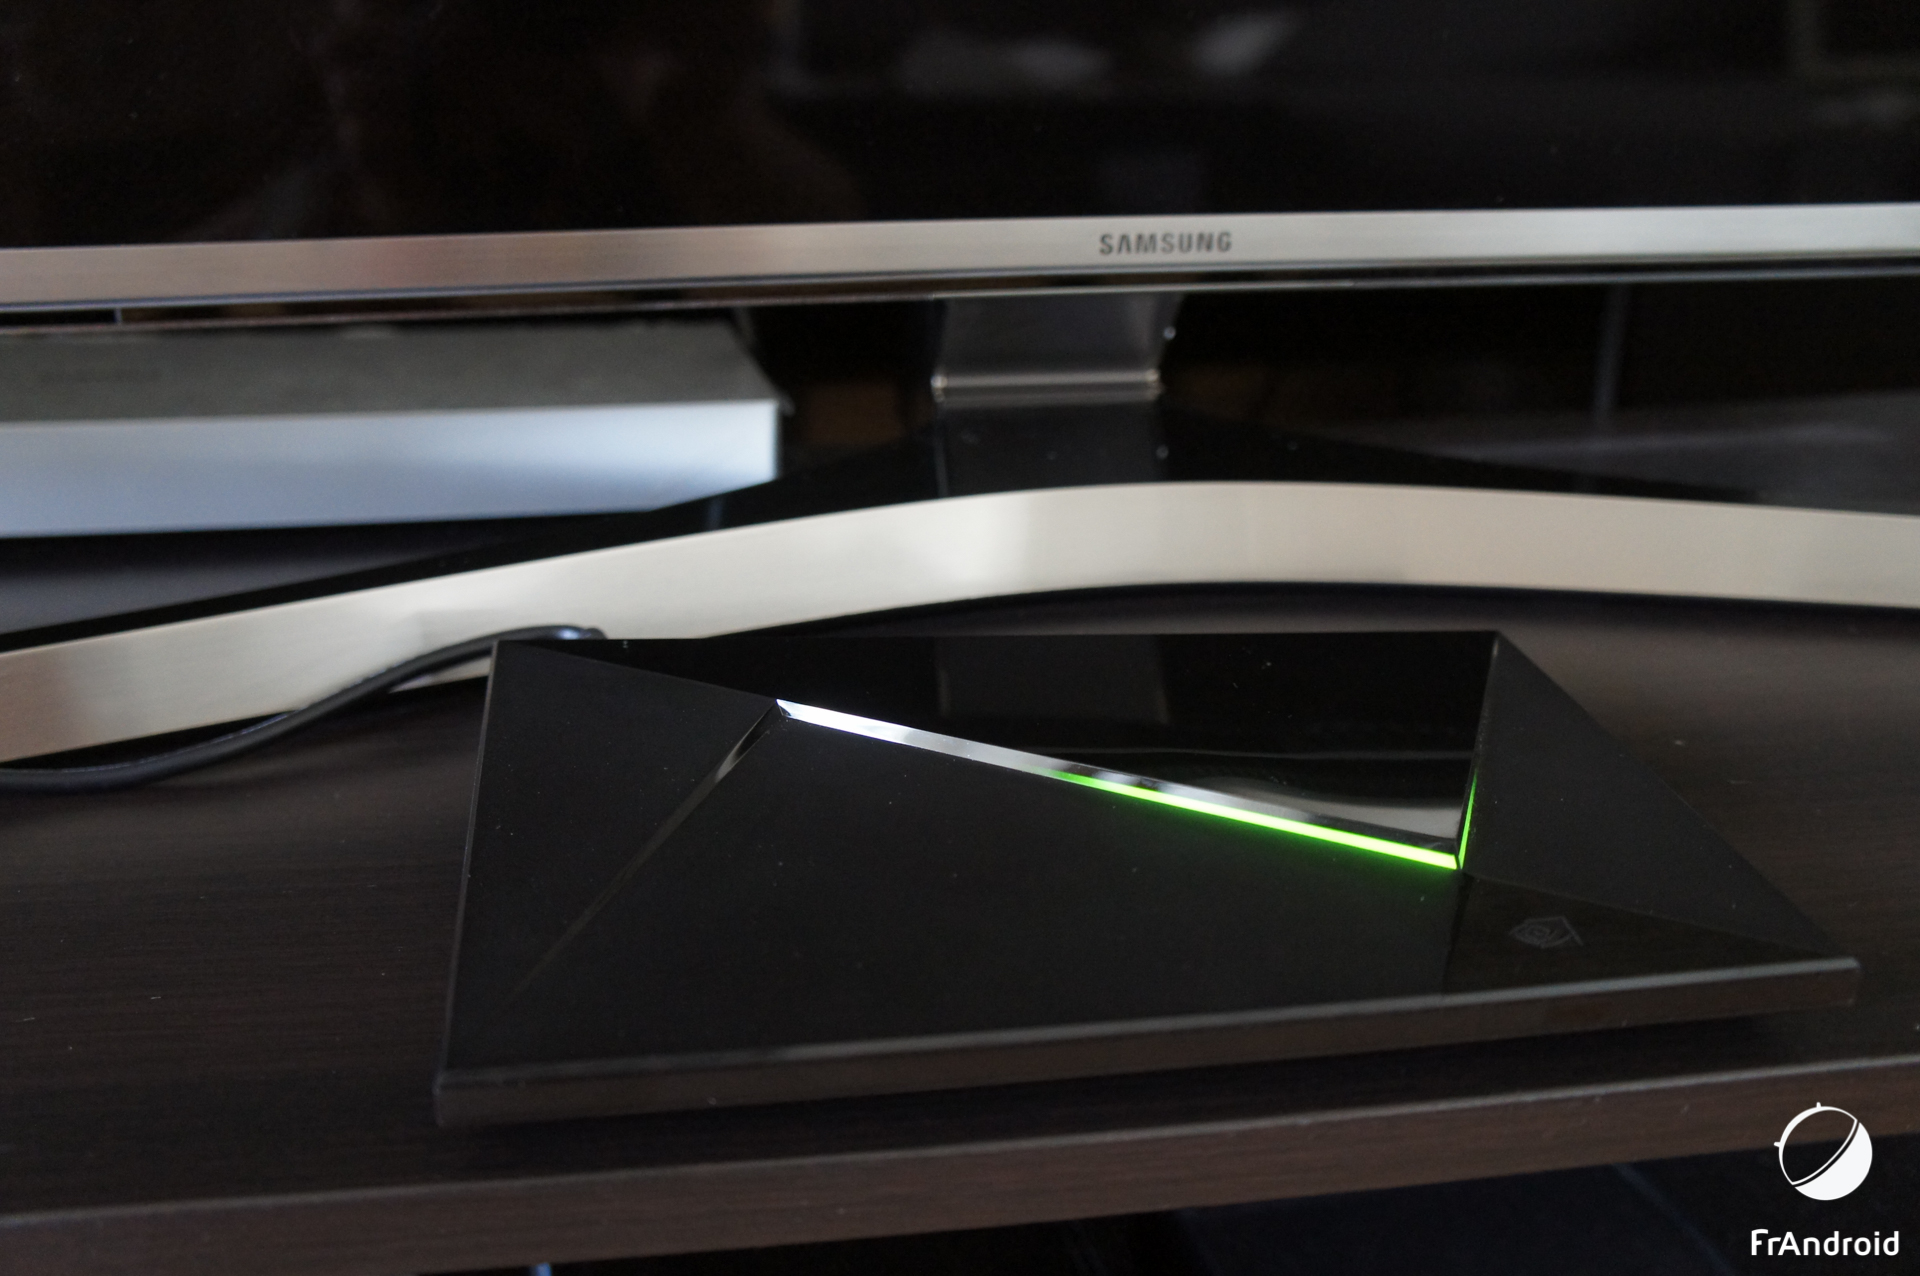 Risque d’électrocution : Nvidia rappelle certains appareils Shield